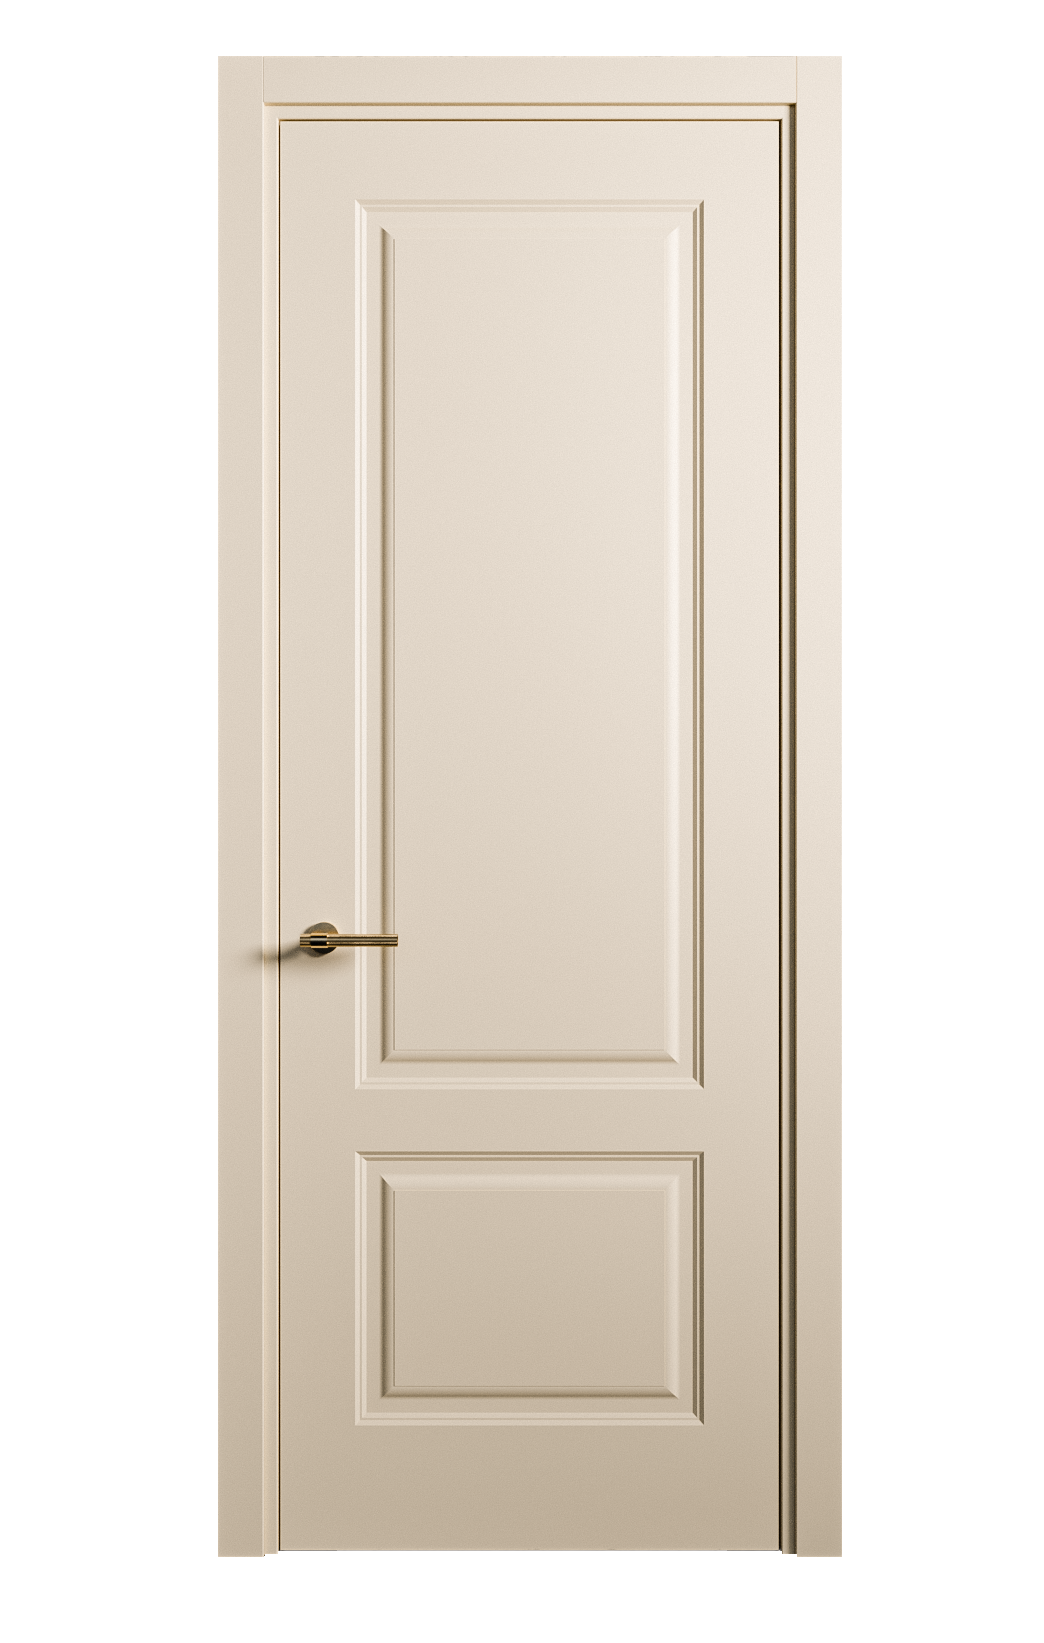 Межкомнатная дверь Вита-1 глухая эмаль ral 1015 26294